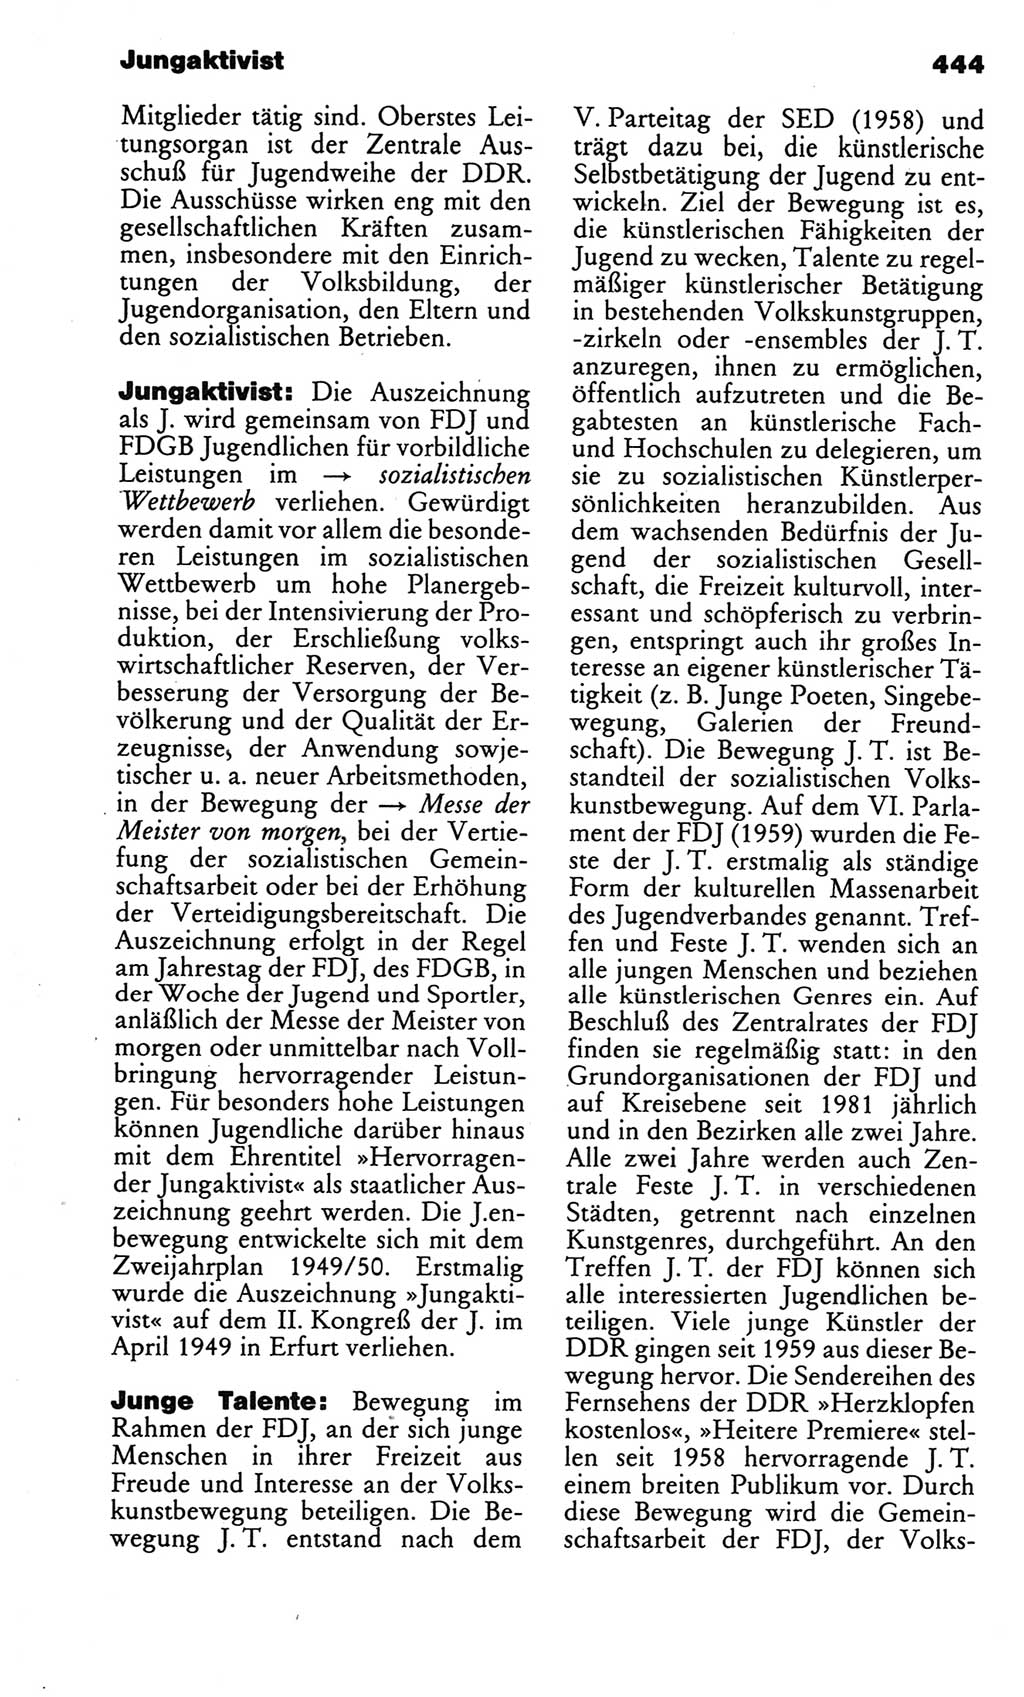 Kleines politisches Wörterbuch [Deutsche Demokratische Republik (DDR)] 1986, Seite 444 (Kl. pol. Wb. DDR 1986, S. 444)